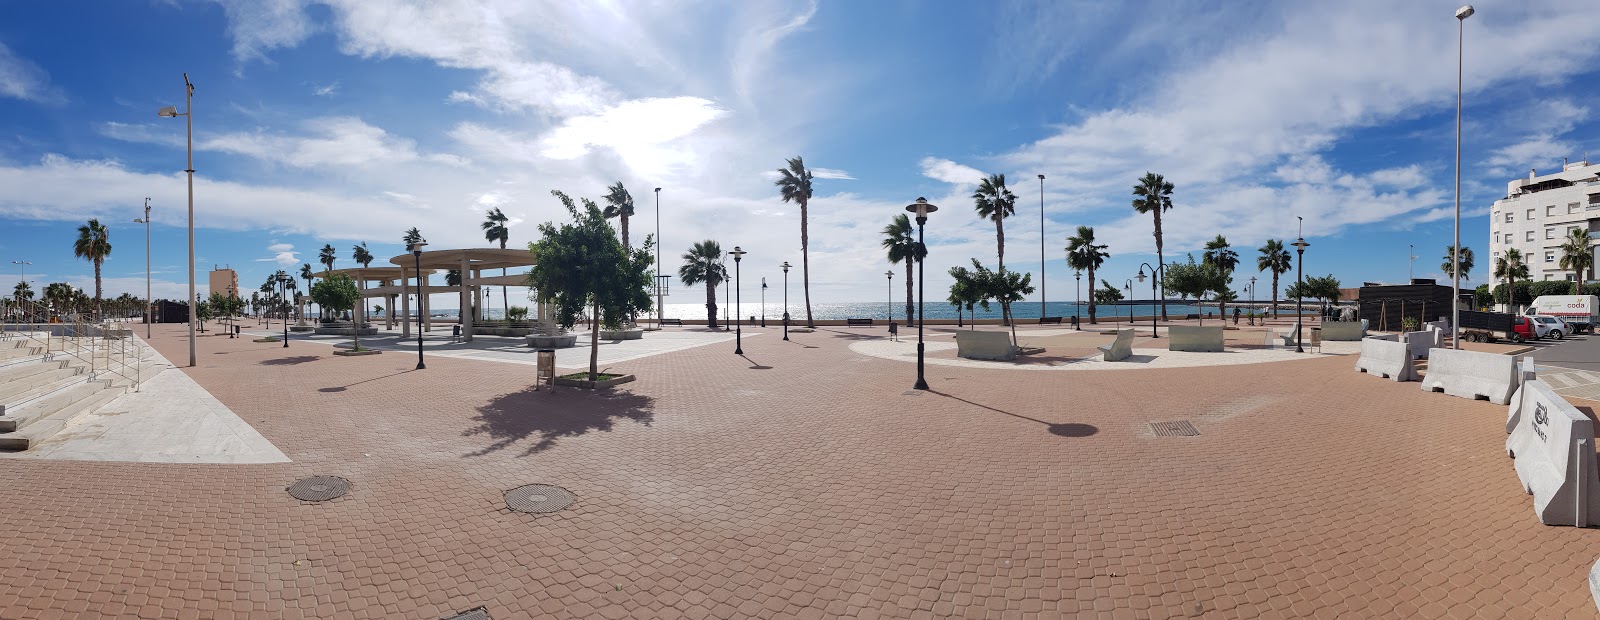 Φωτογραφία του Playa de San Nicolas με μεγάλοι πολλαπλοί κόλποι